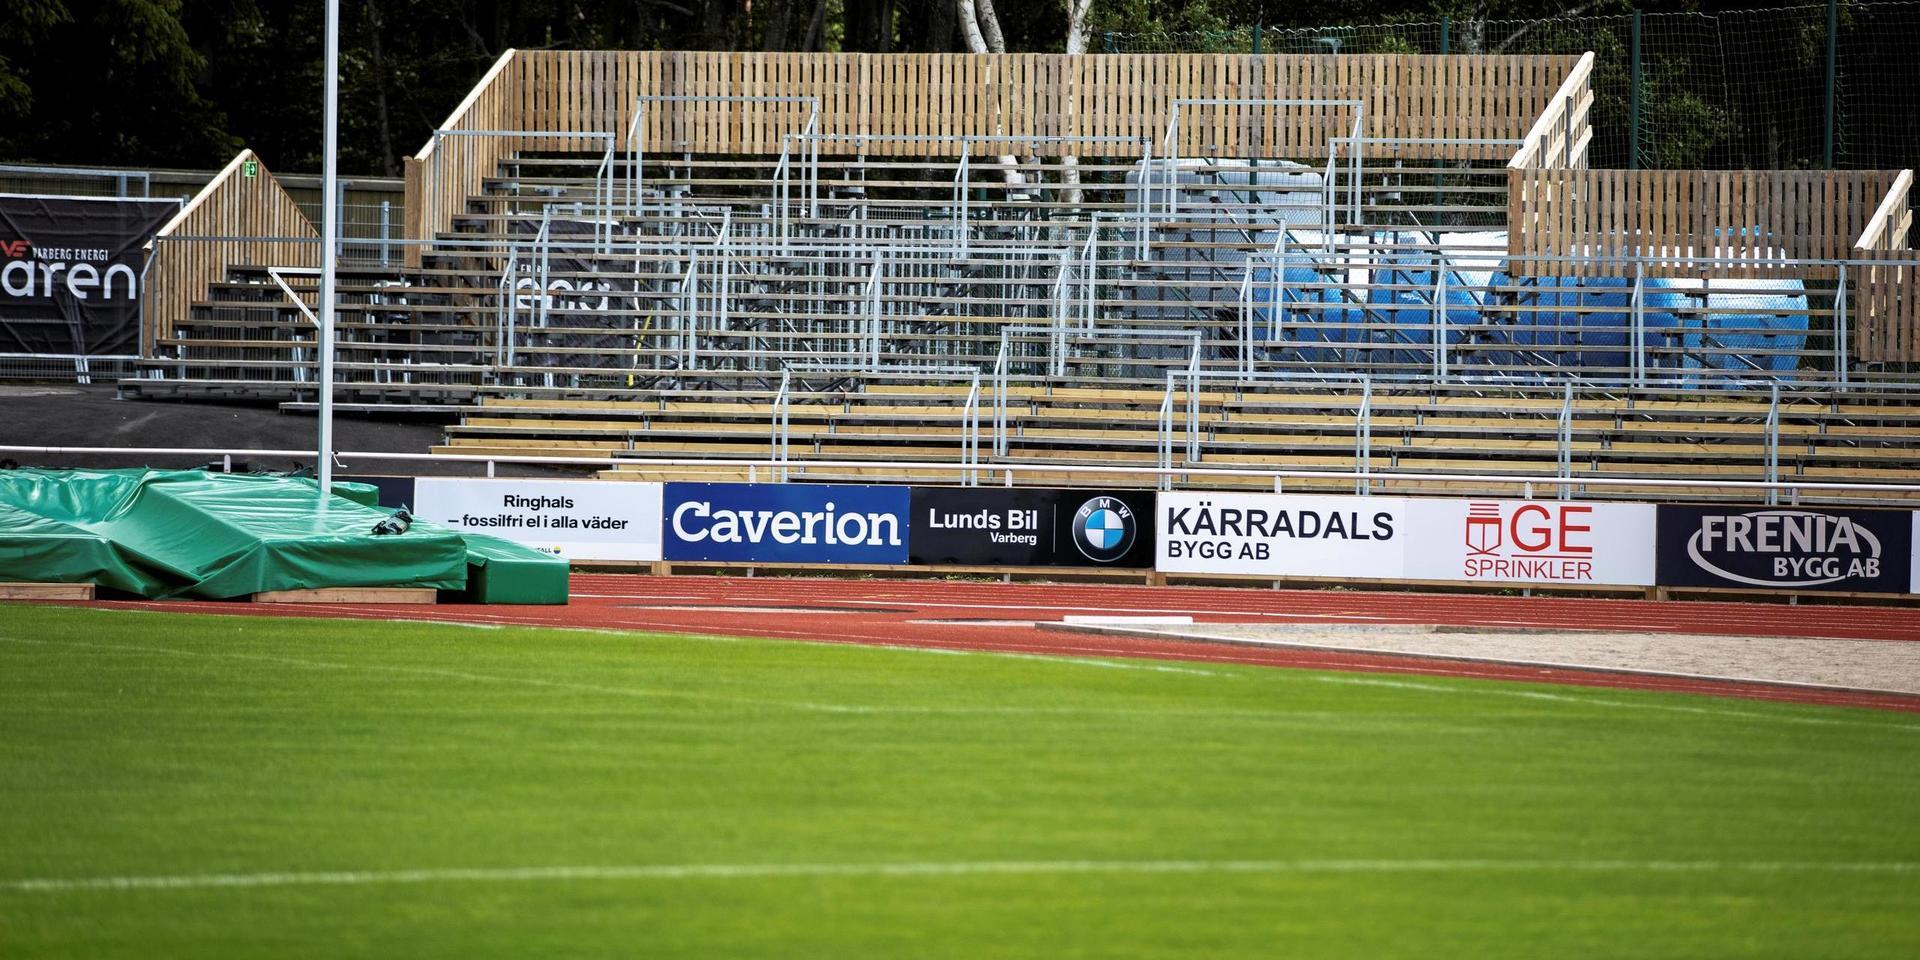 A-planen på Varberg Energi Arena är verkligen en fin fotbollsplan, skriver insändarskribenten.